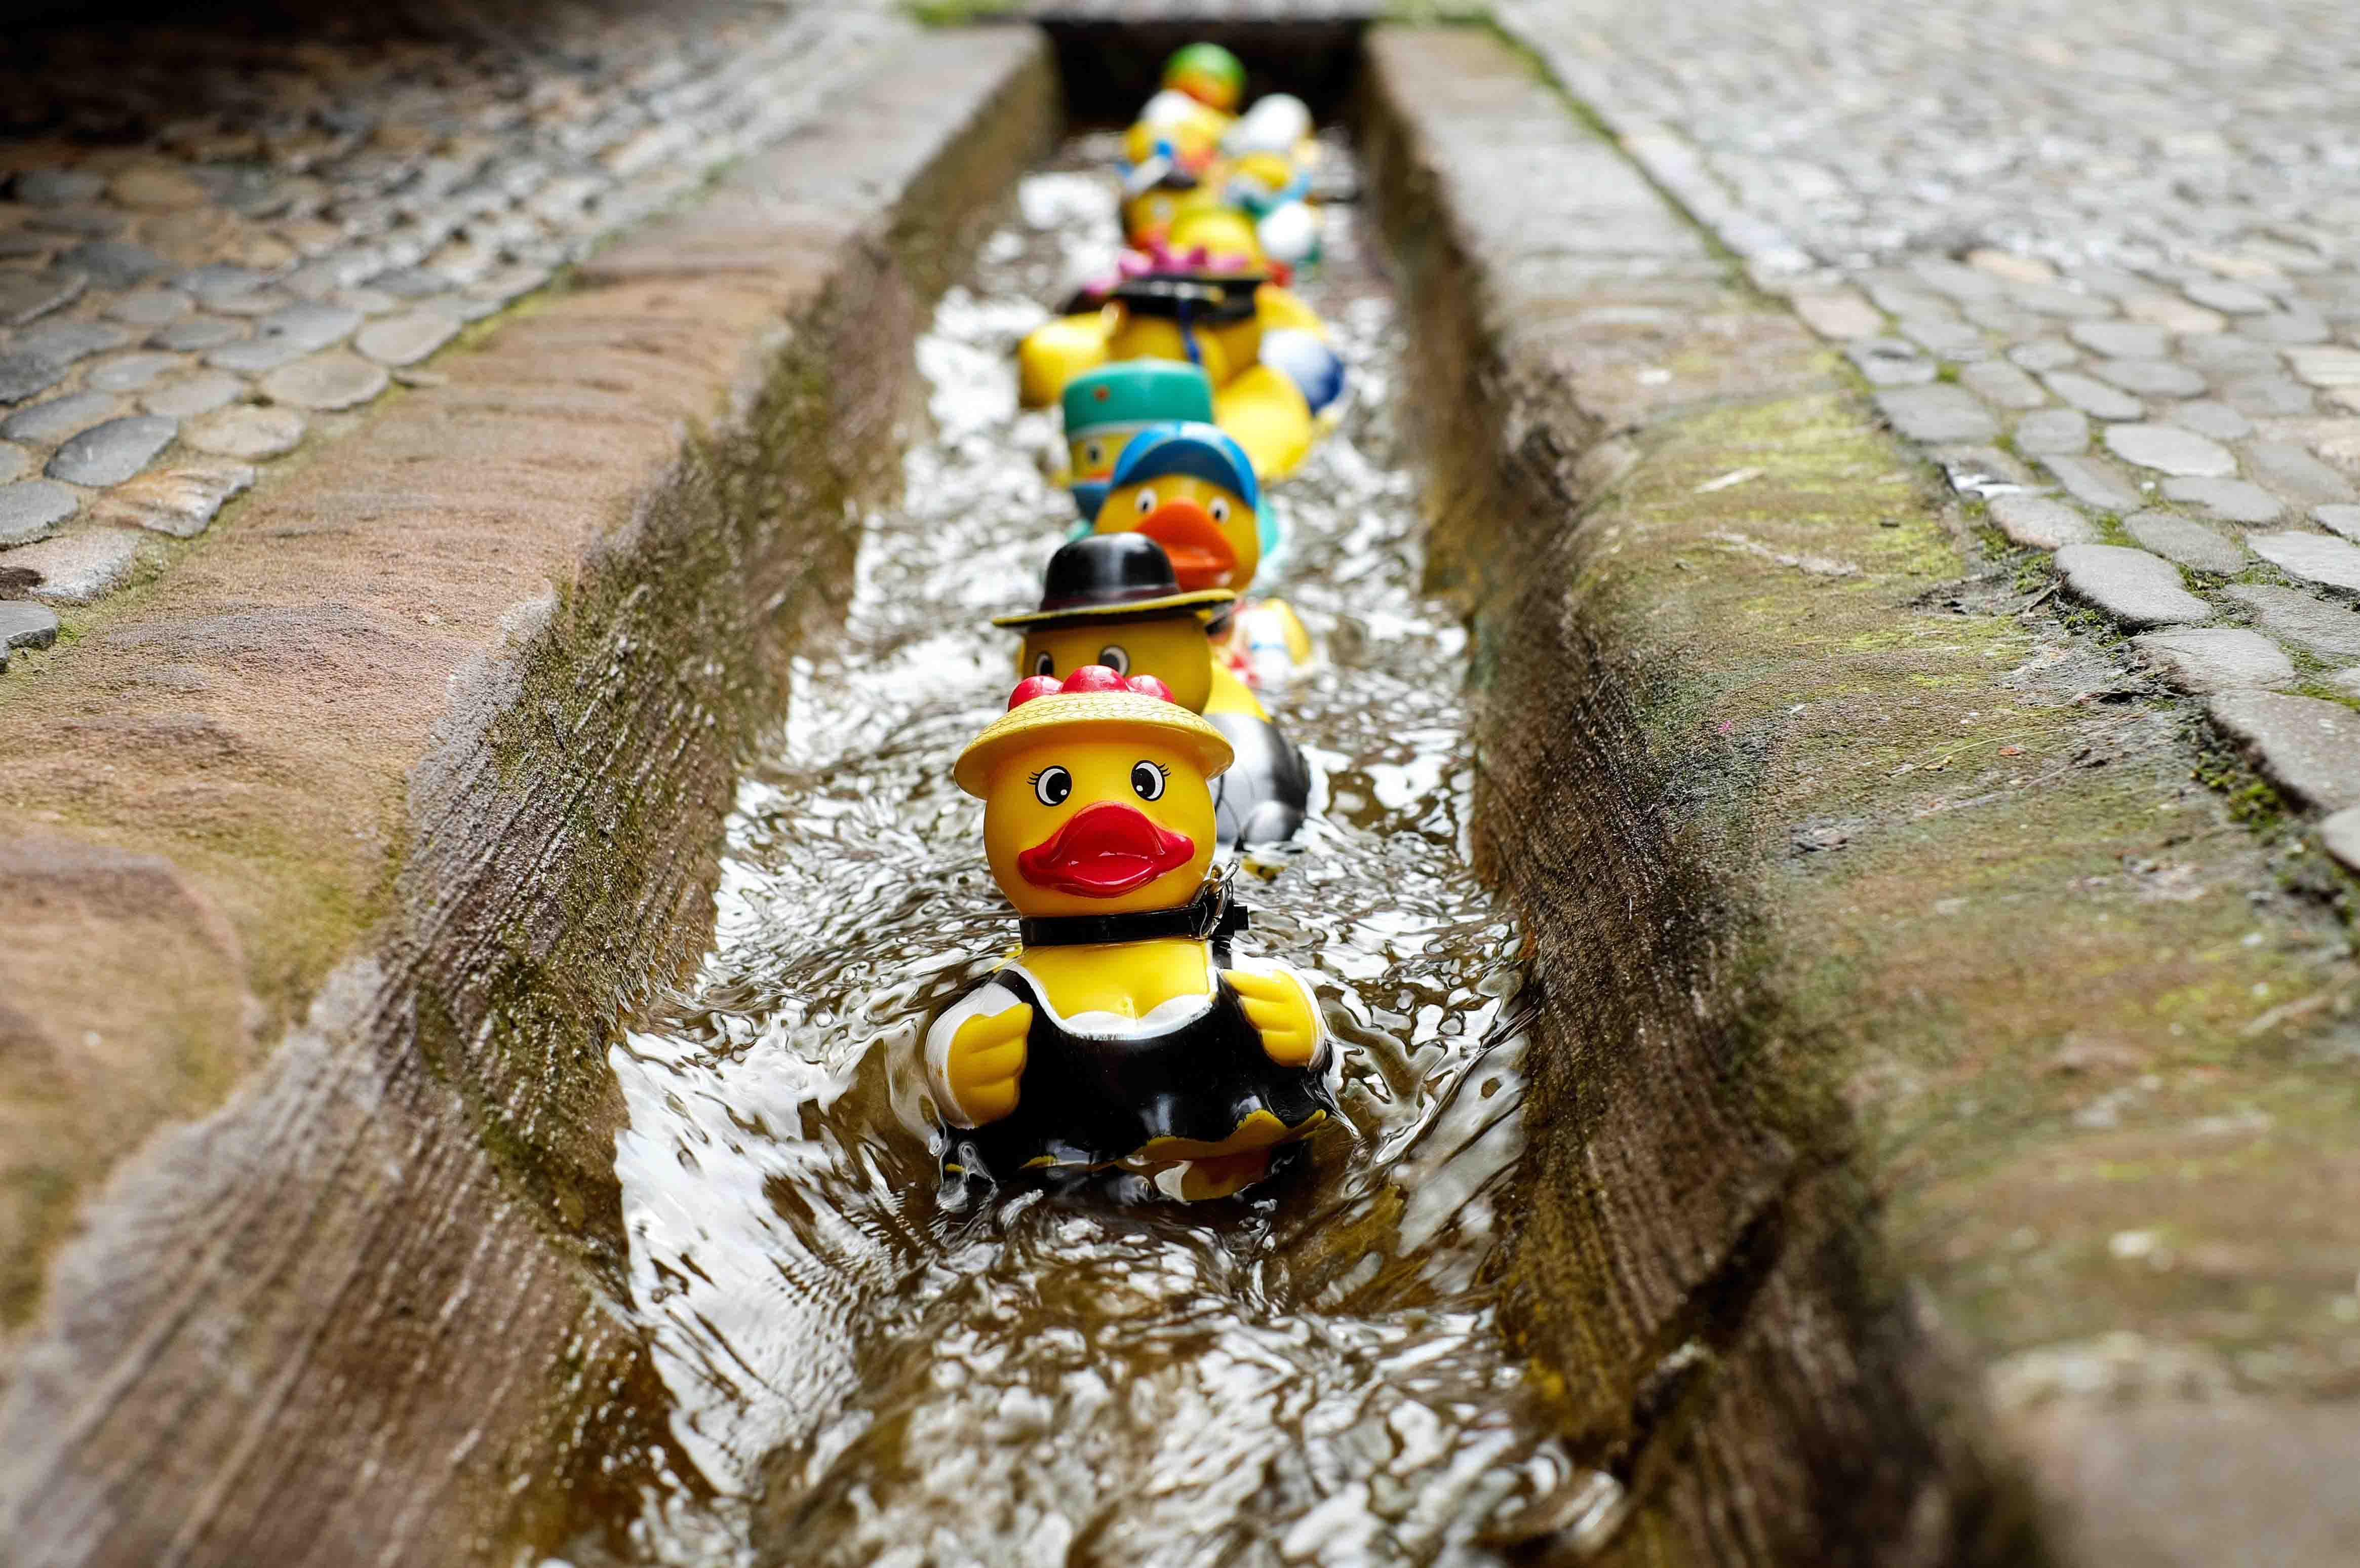 bath-ducks-blur-colorful-106144.jpg